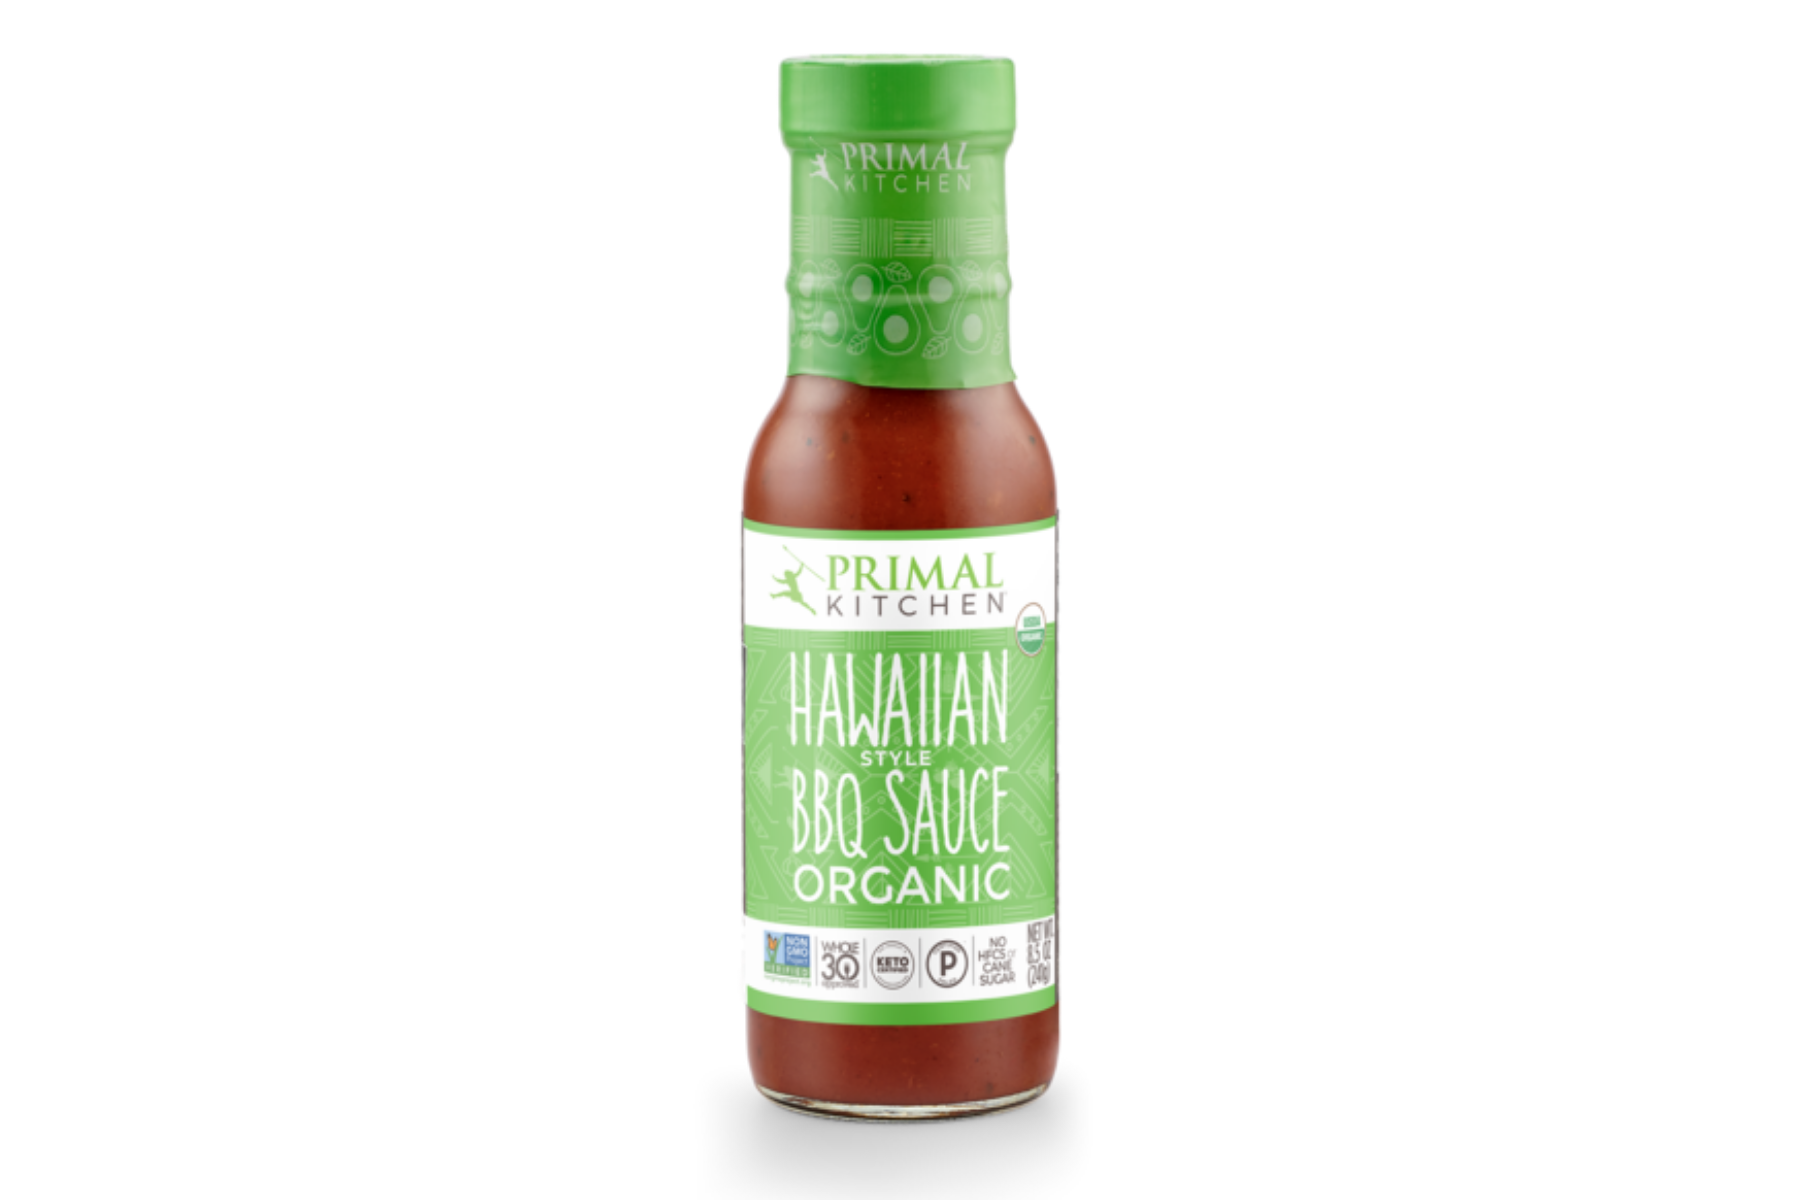 Bottle of Primal Kitchen's vegan Hawaiian Style BBQ sauce